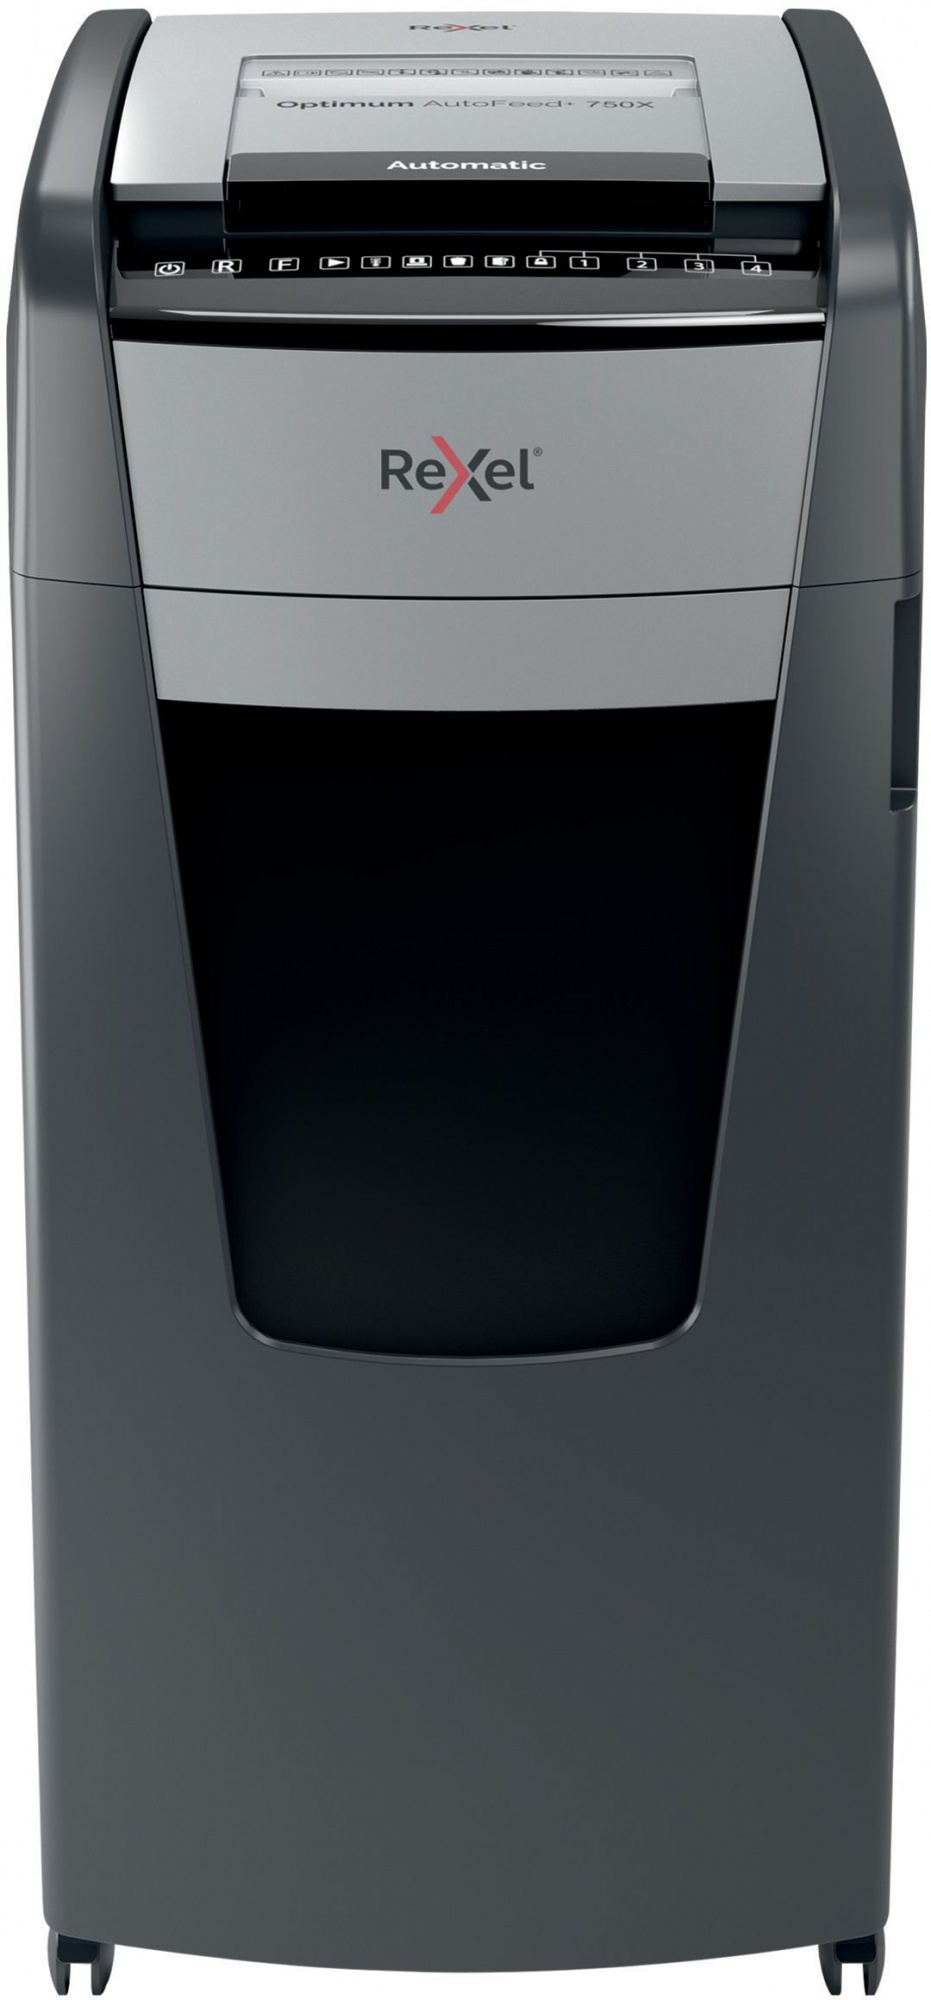 Шредер Rexel Optimum AutoFeed 750X черный с автоподачей (секр.P-4)/фрагменты/750лист./140лтр./скрепки/скобы/пл.карты